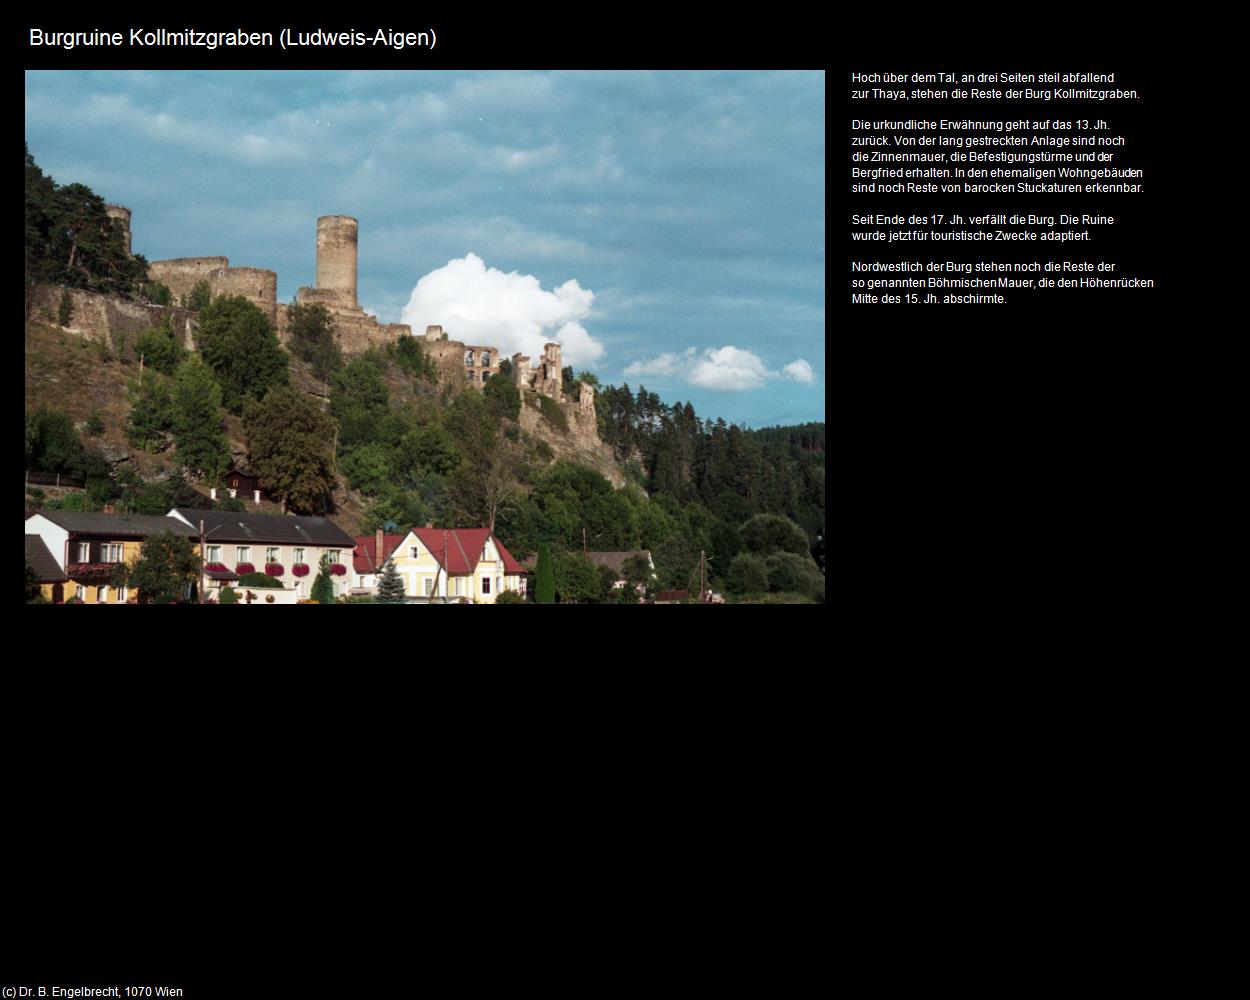 Burgruine Kollmitzgraben (Ludweis-Aigen) in Kulturatlas-NIEDERÖSTERREICH